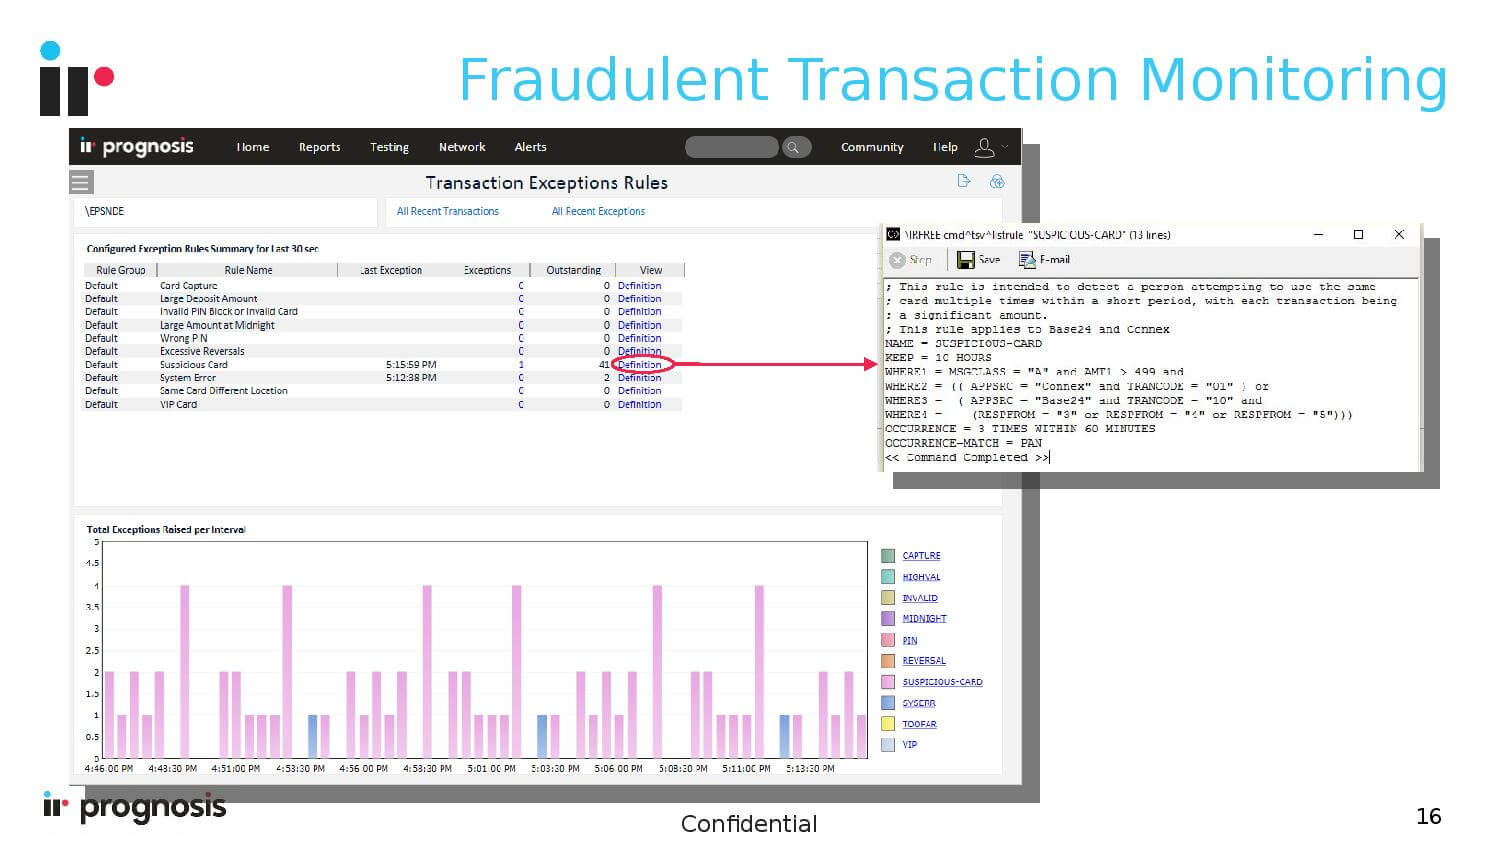 Fraudulent Transaction Monitoring